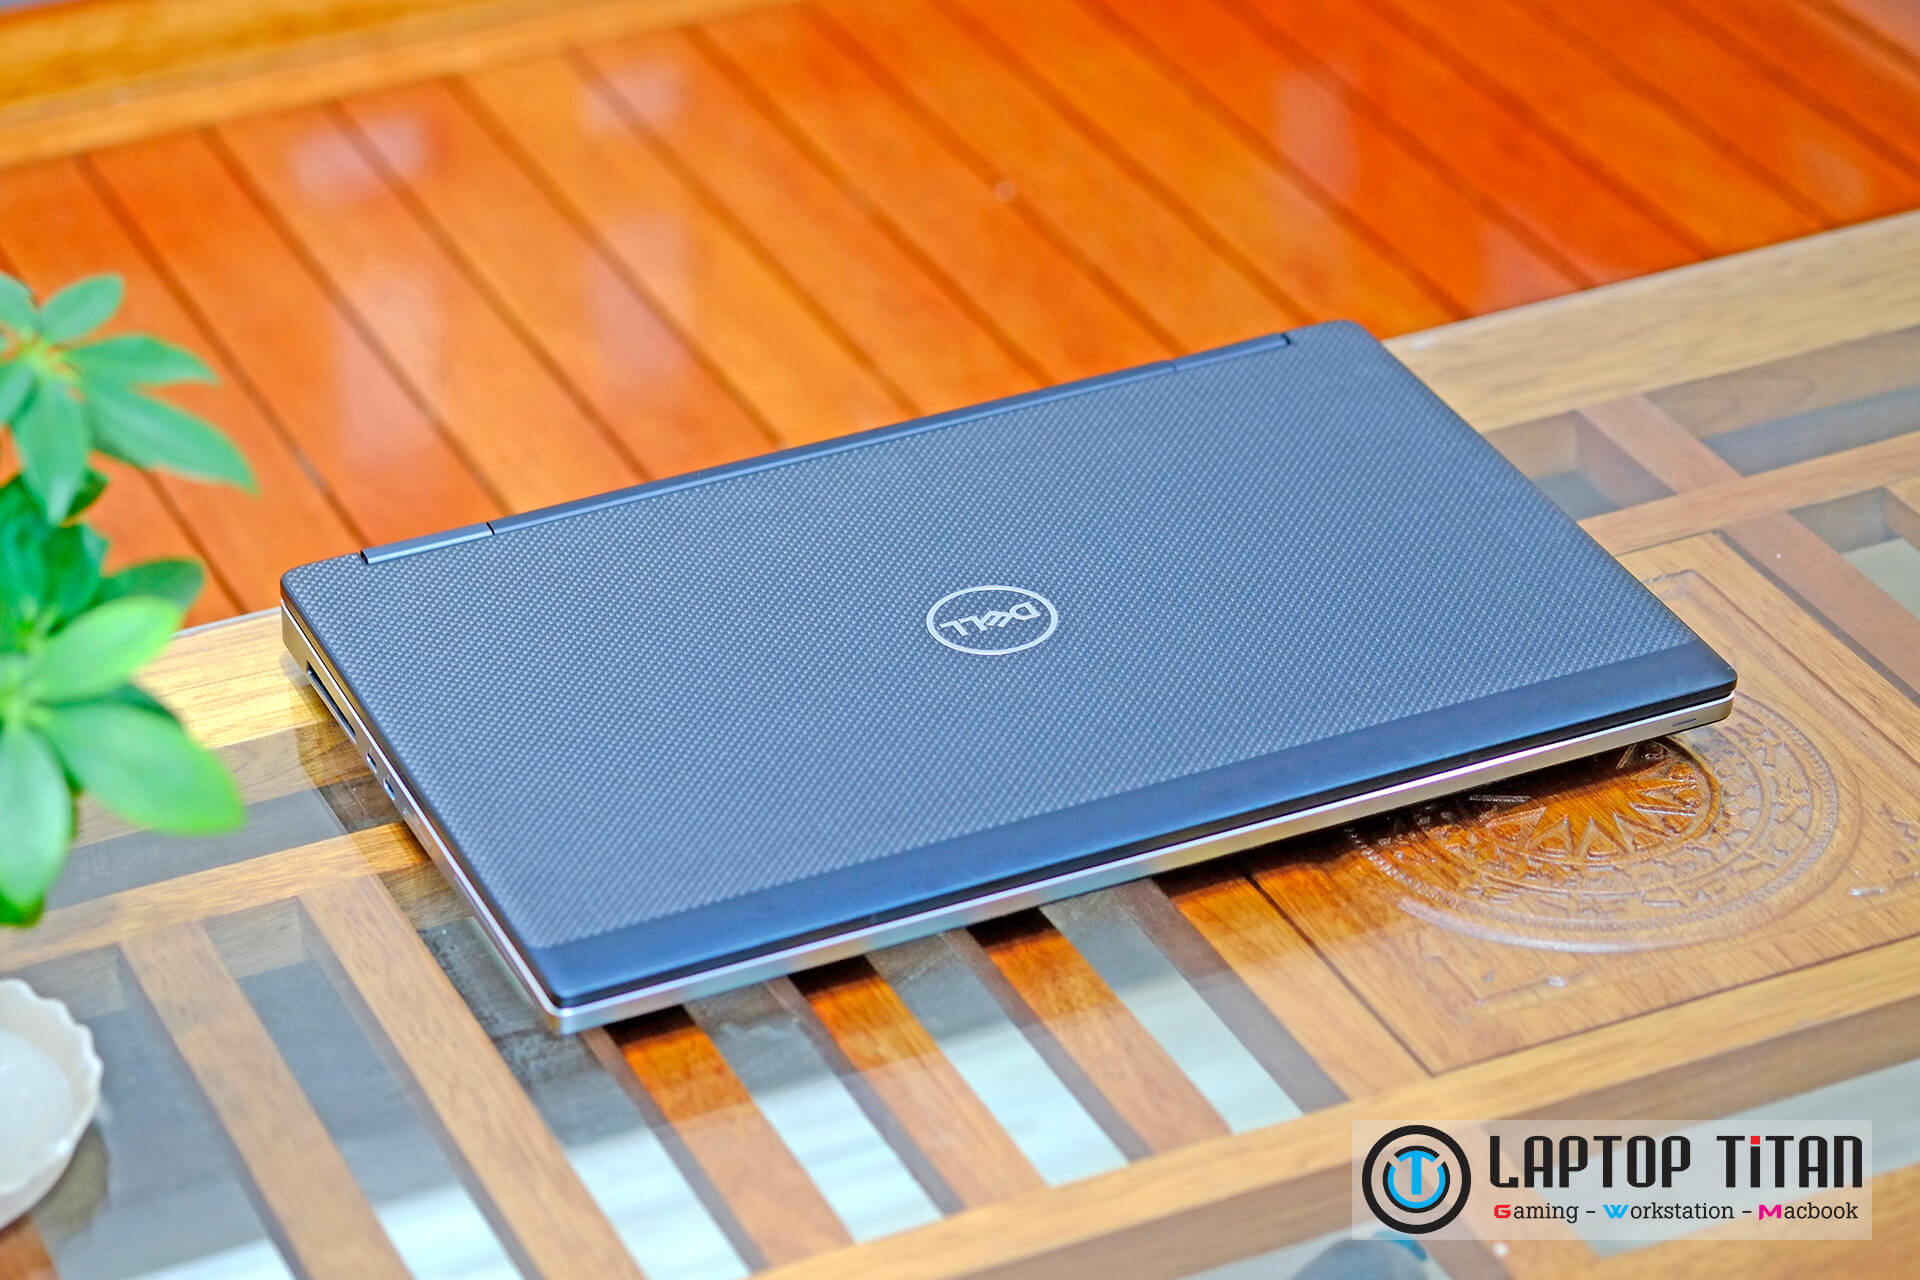 Dell Precision 7530 Laptoptitan 03